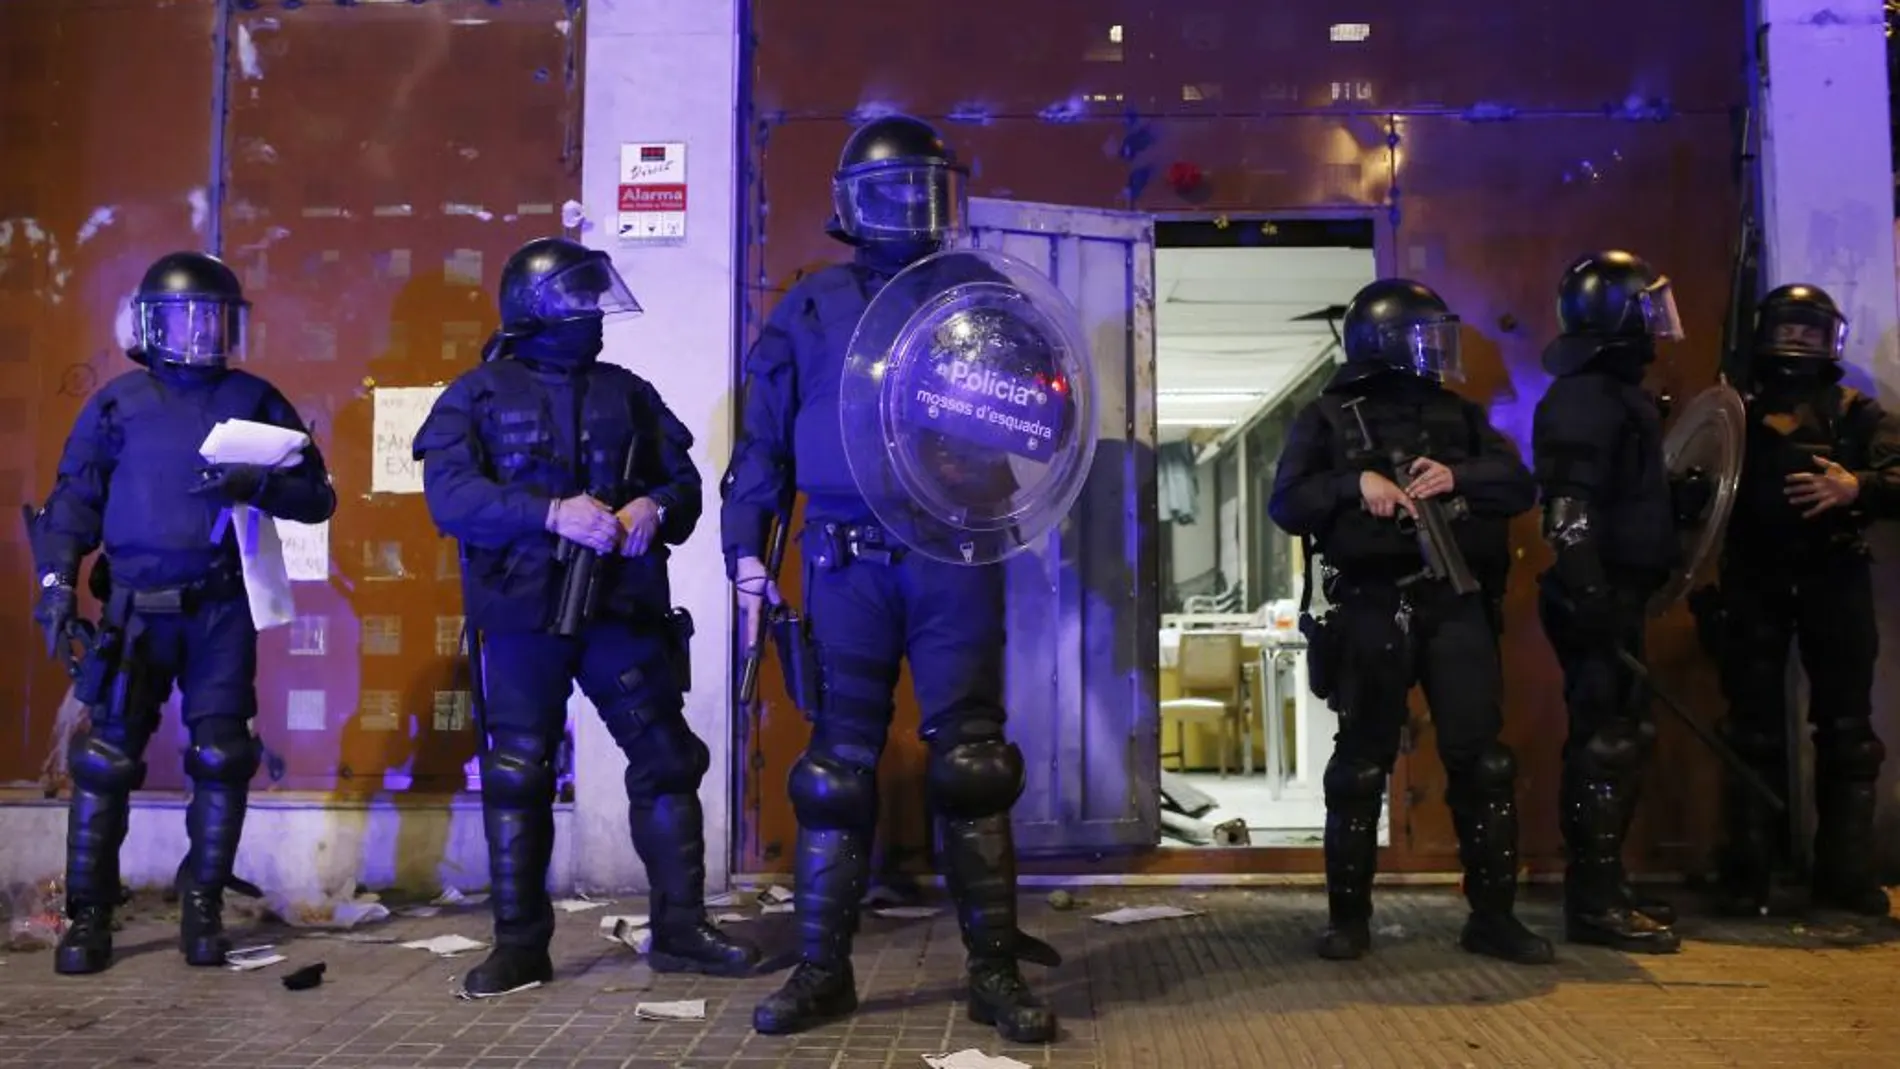 Los mossos en la puerta del "banco expropiado"